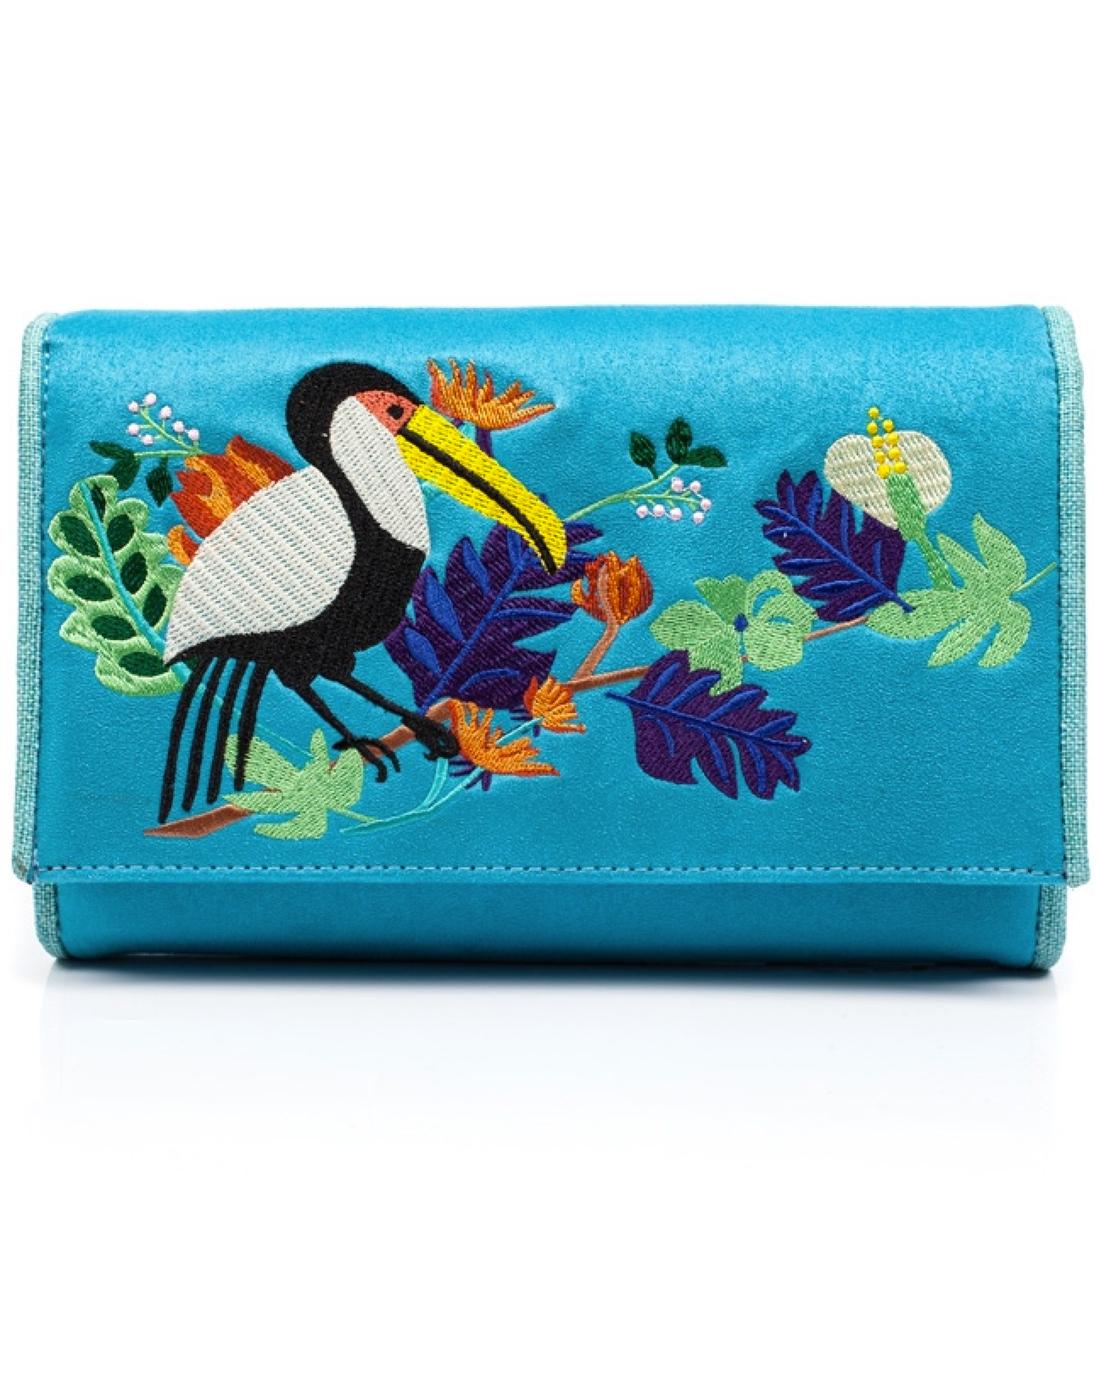 Birdy Beauty IRREGULAR CHOICE Travel Wallet (T)